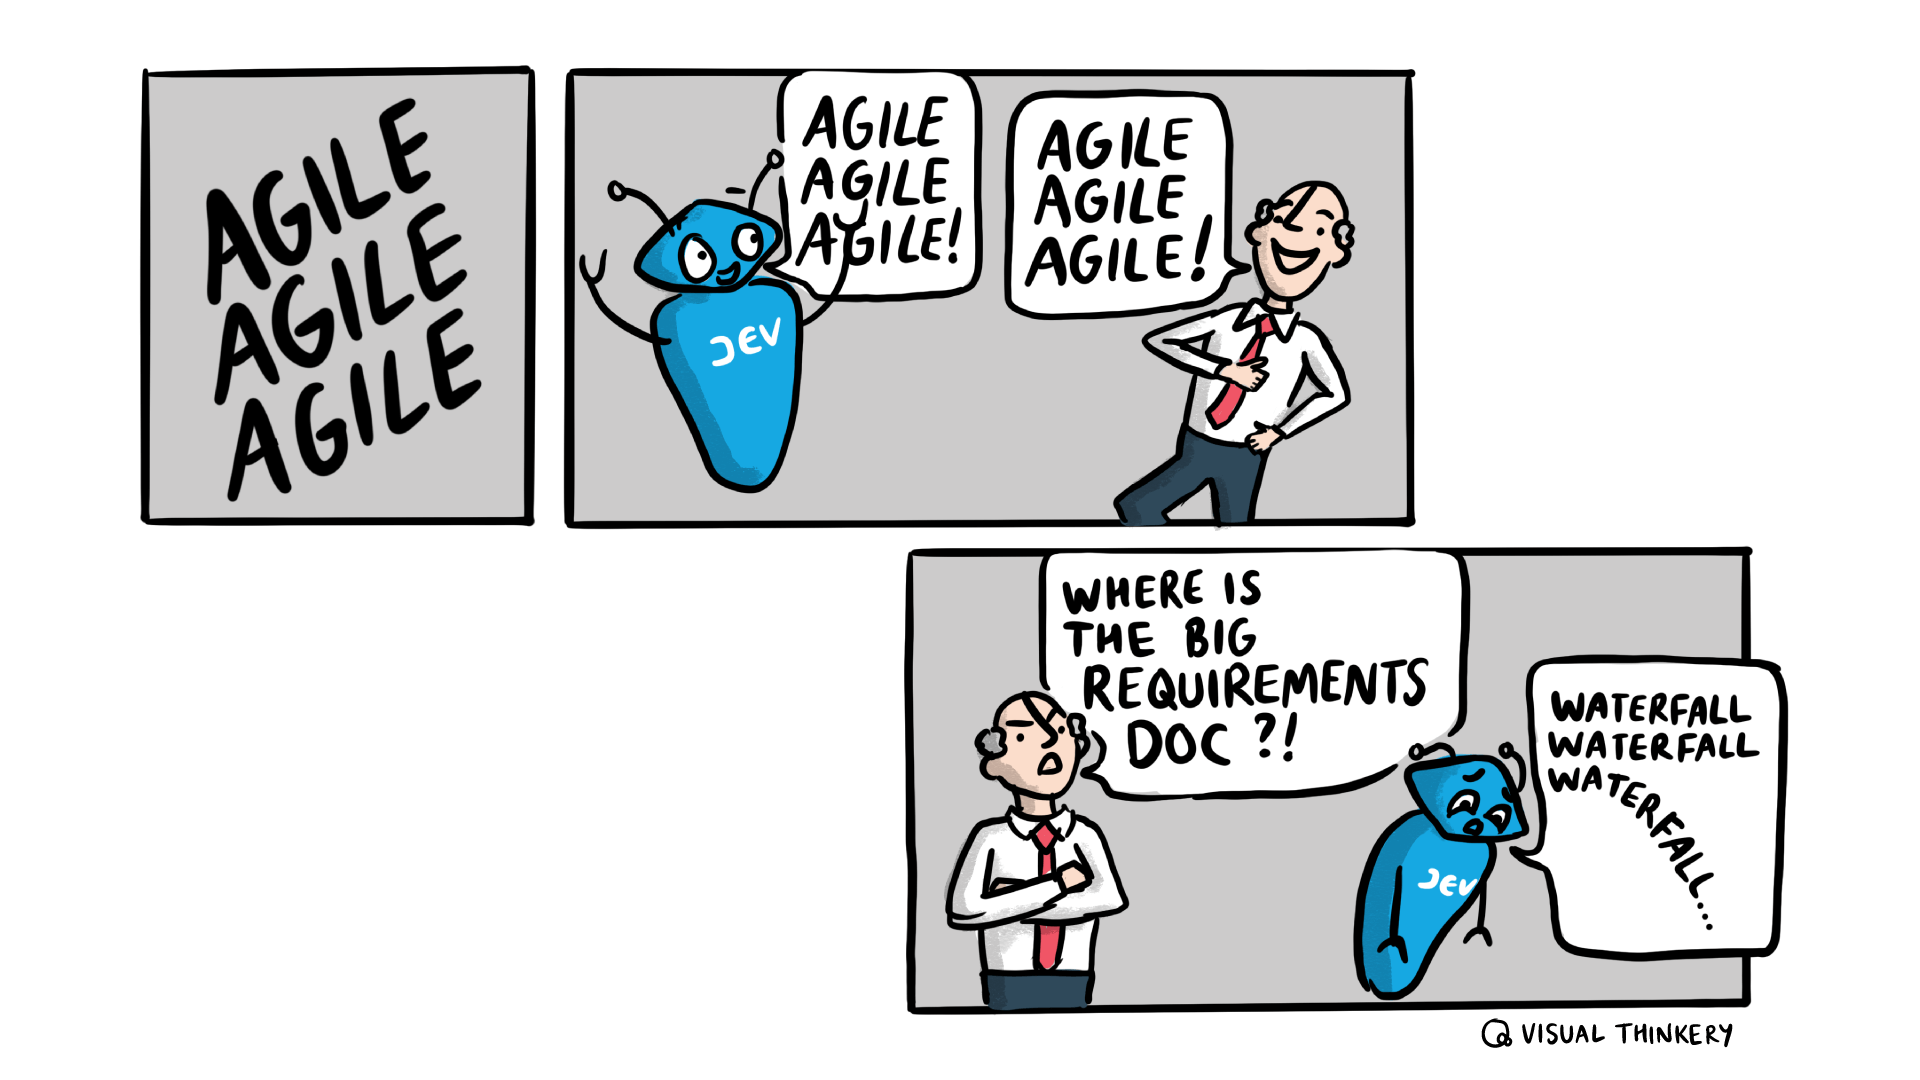 Agile Agile Agile